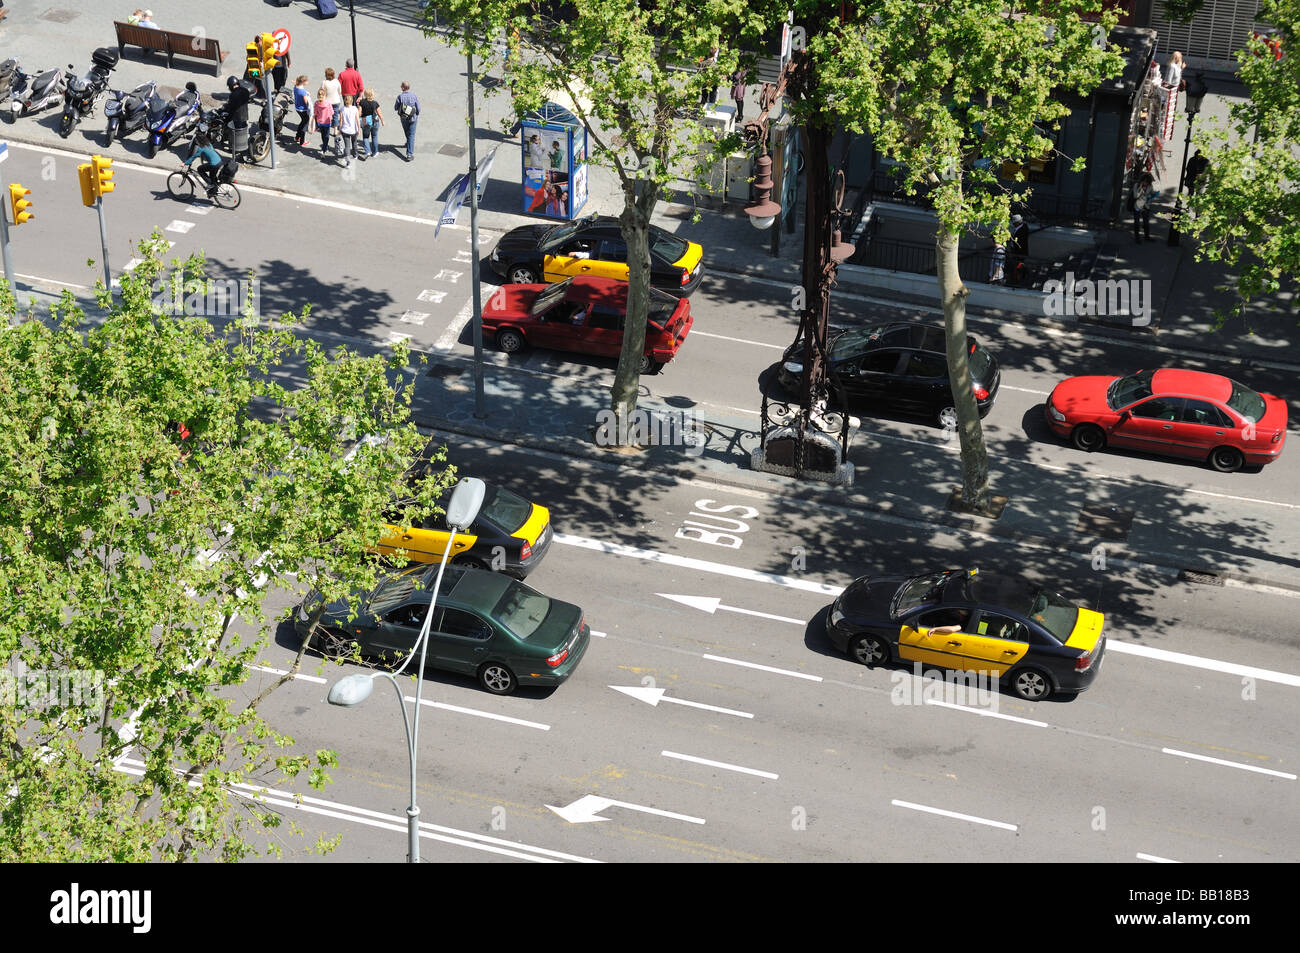 Street scene in the city of Barcelona, Spain Stock Photo